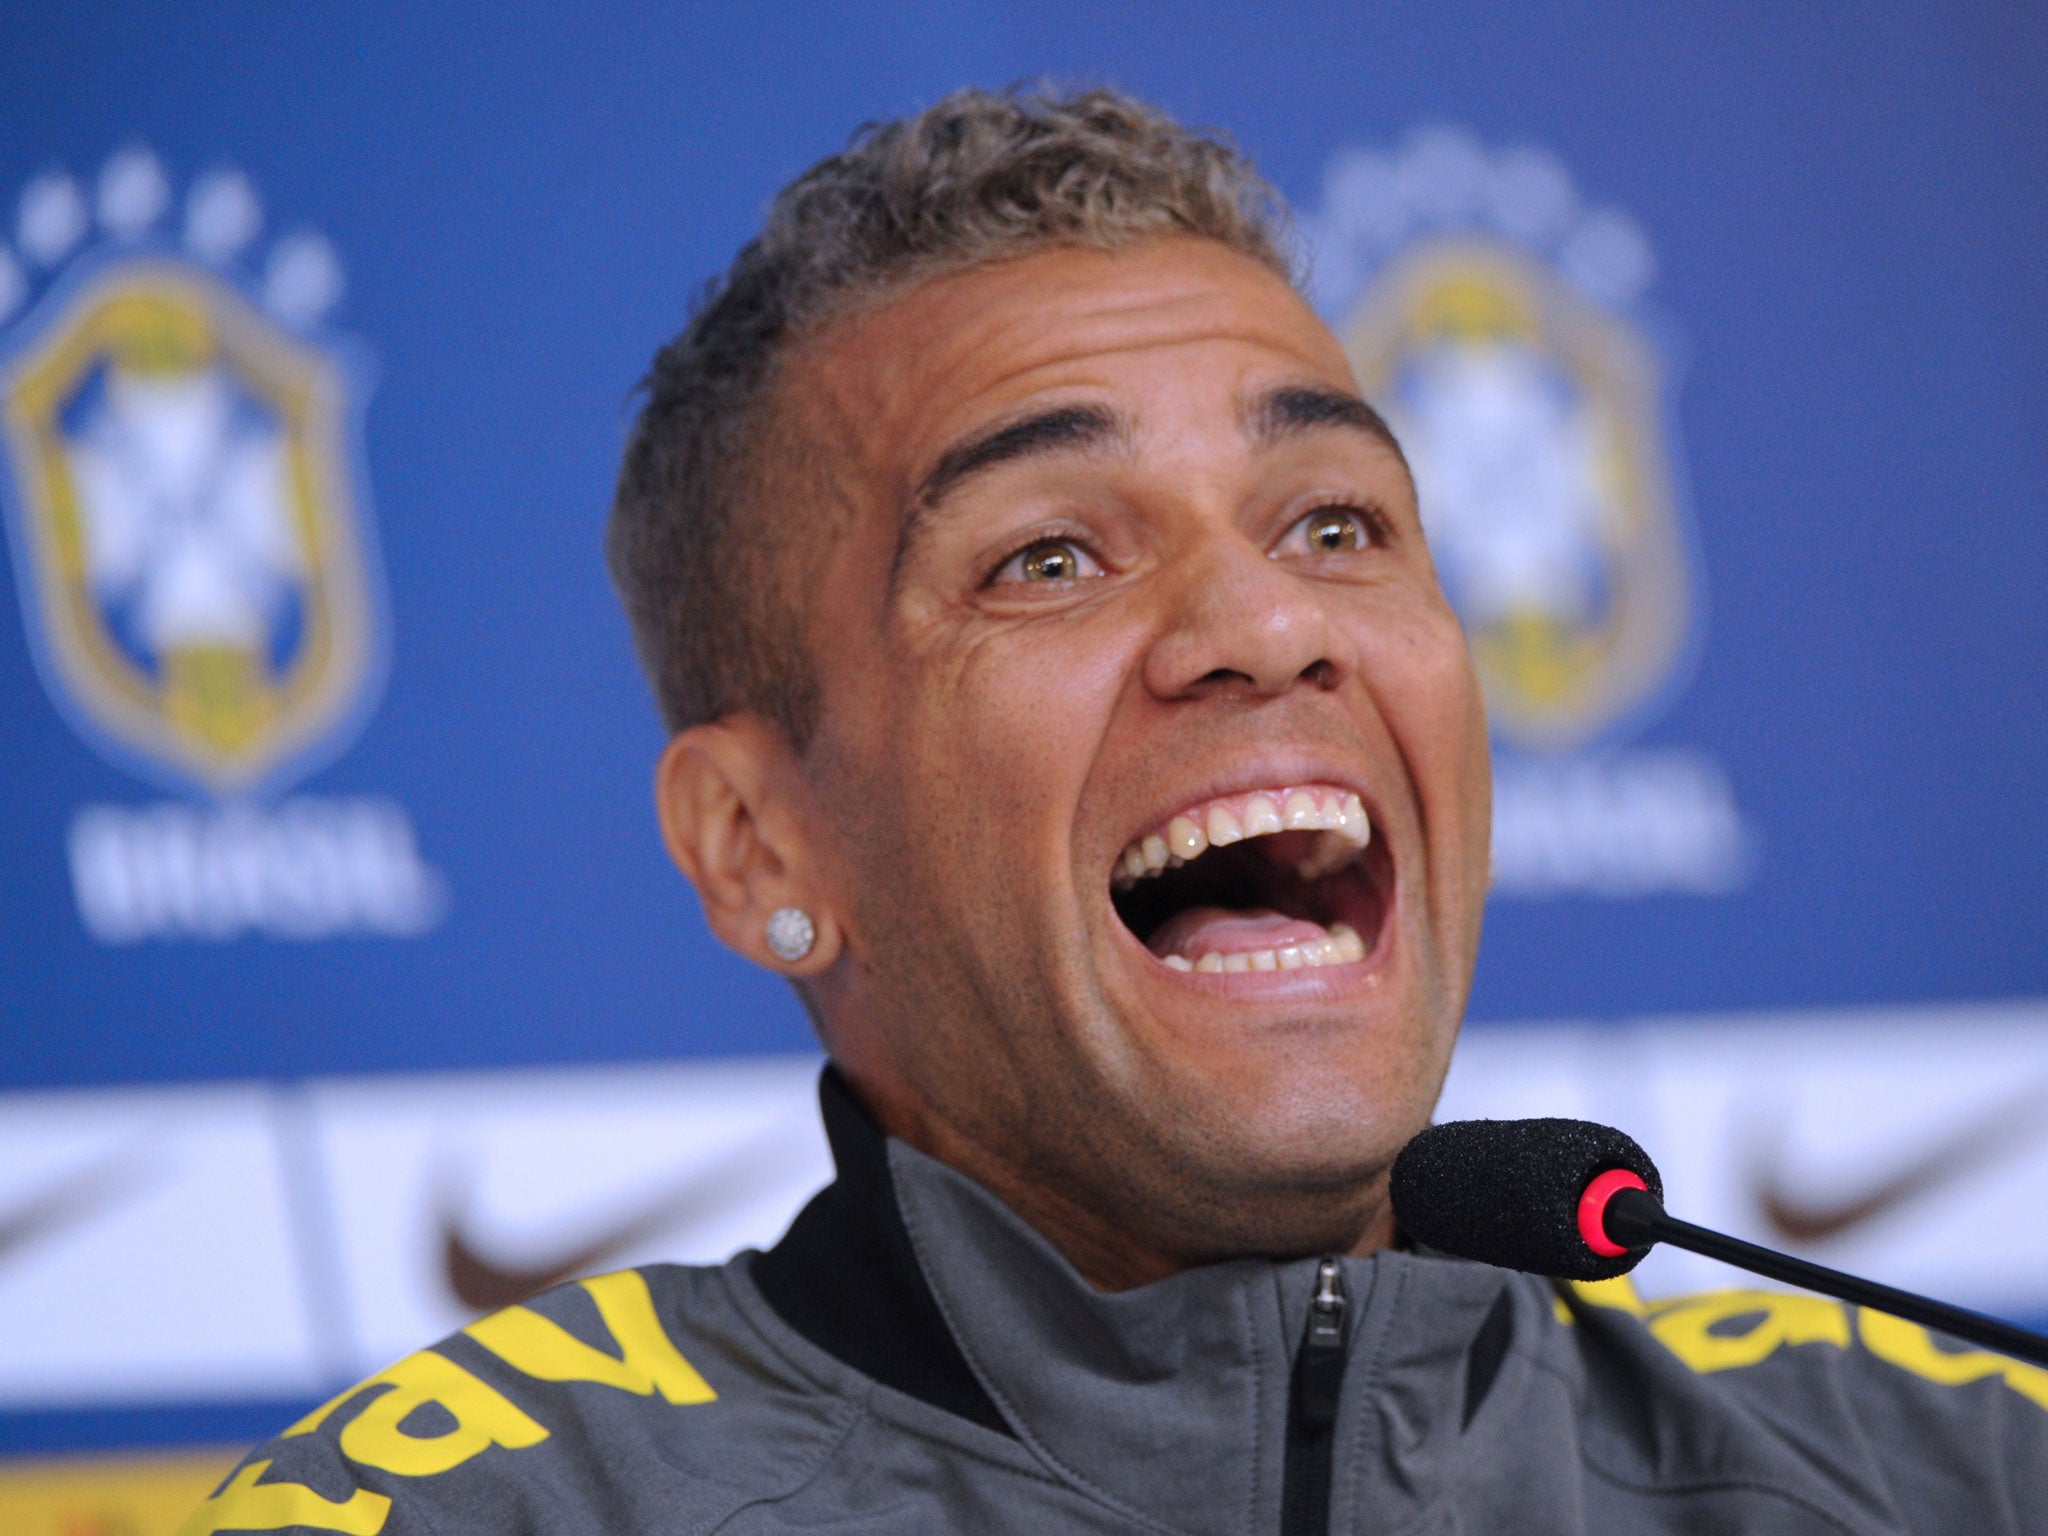 Daniel Alves laughs during a press conference